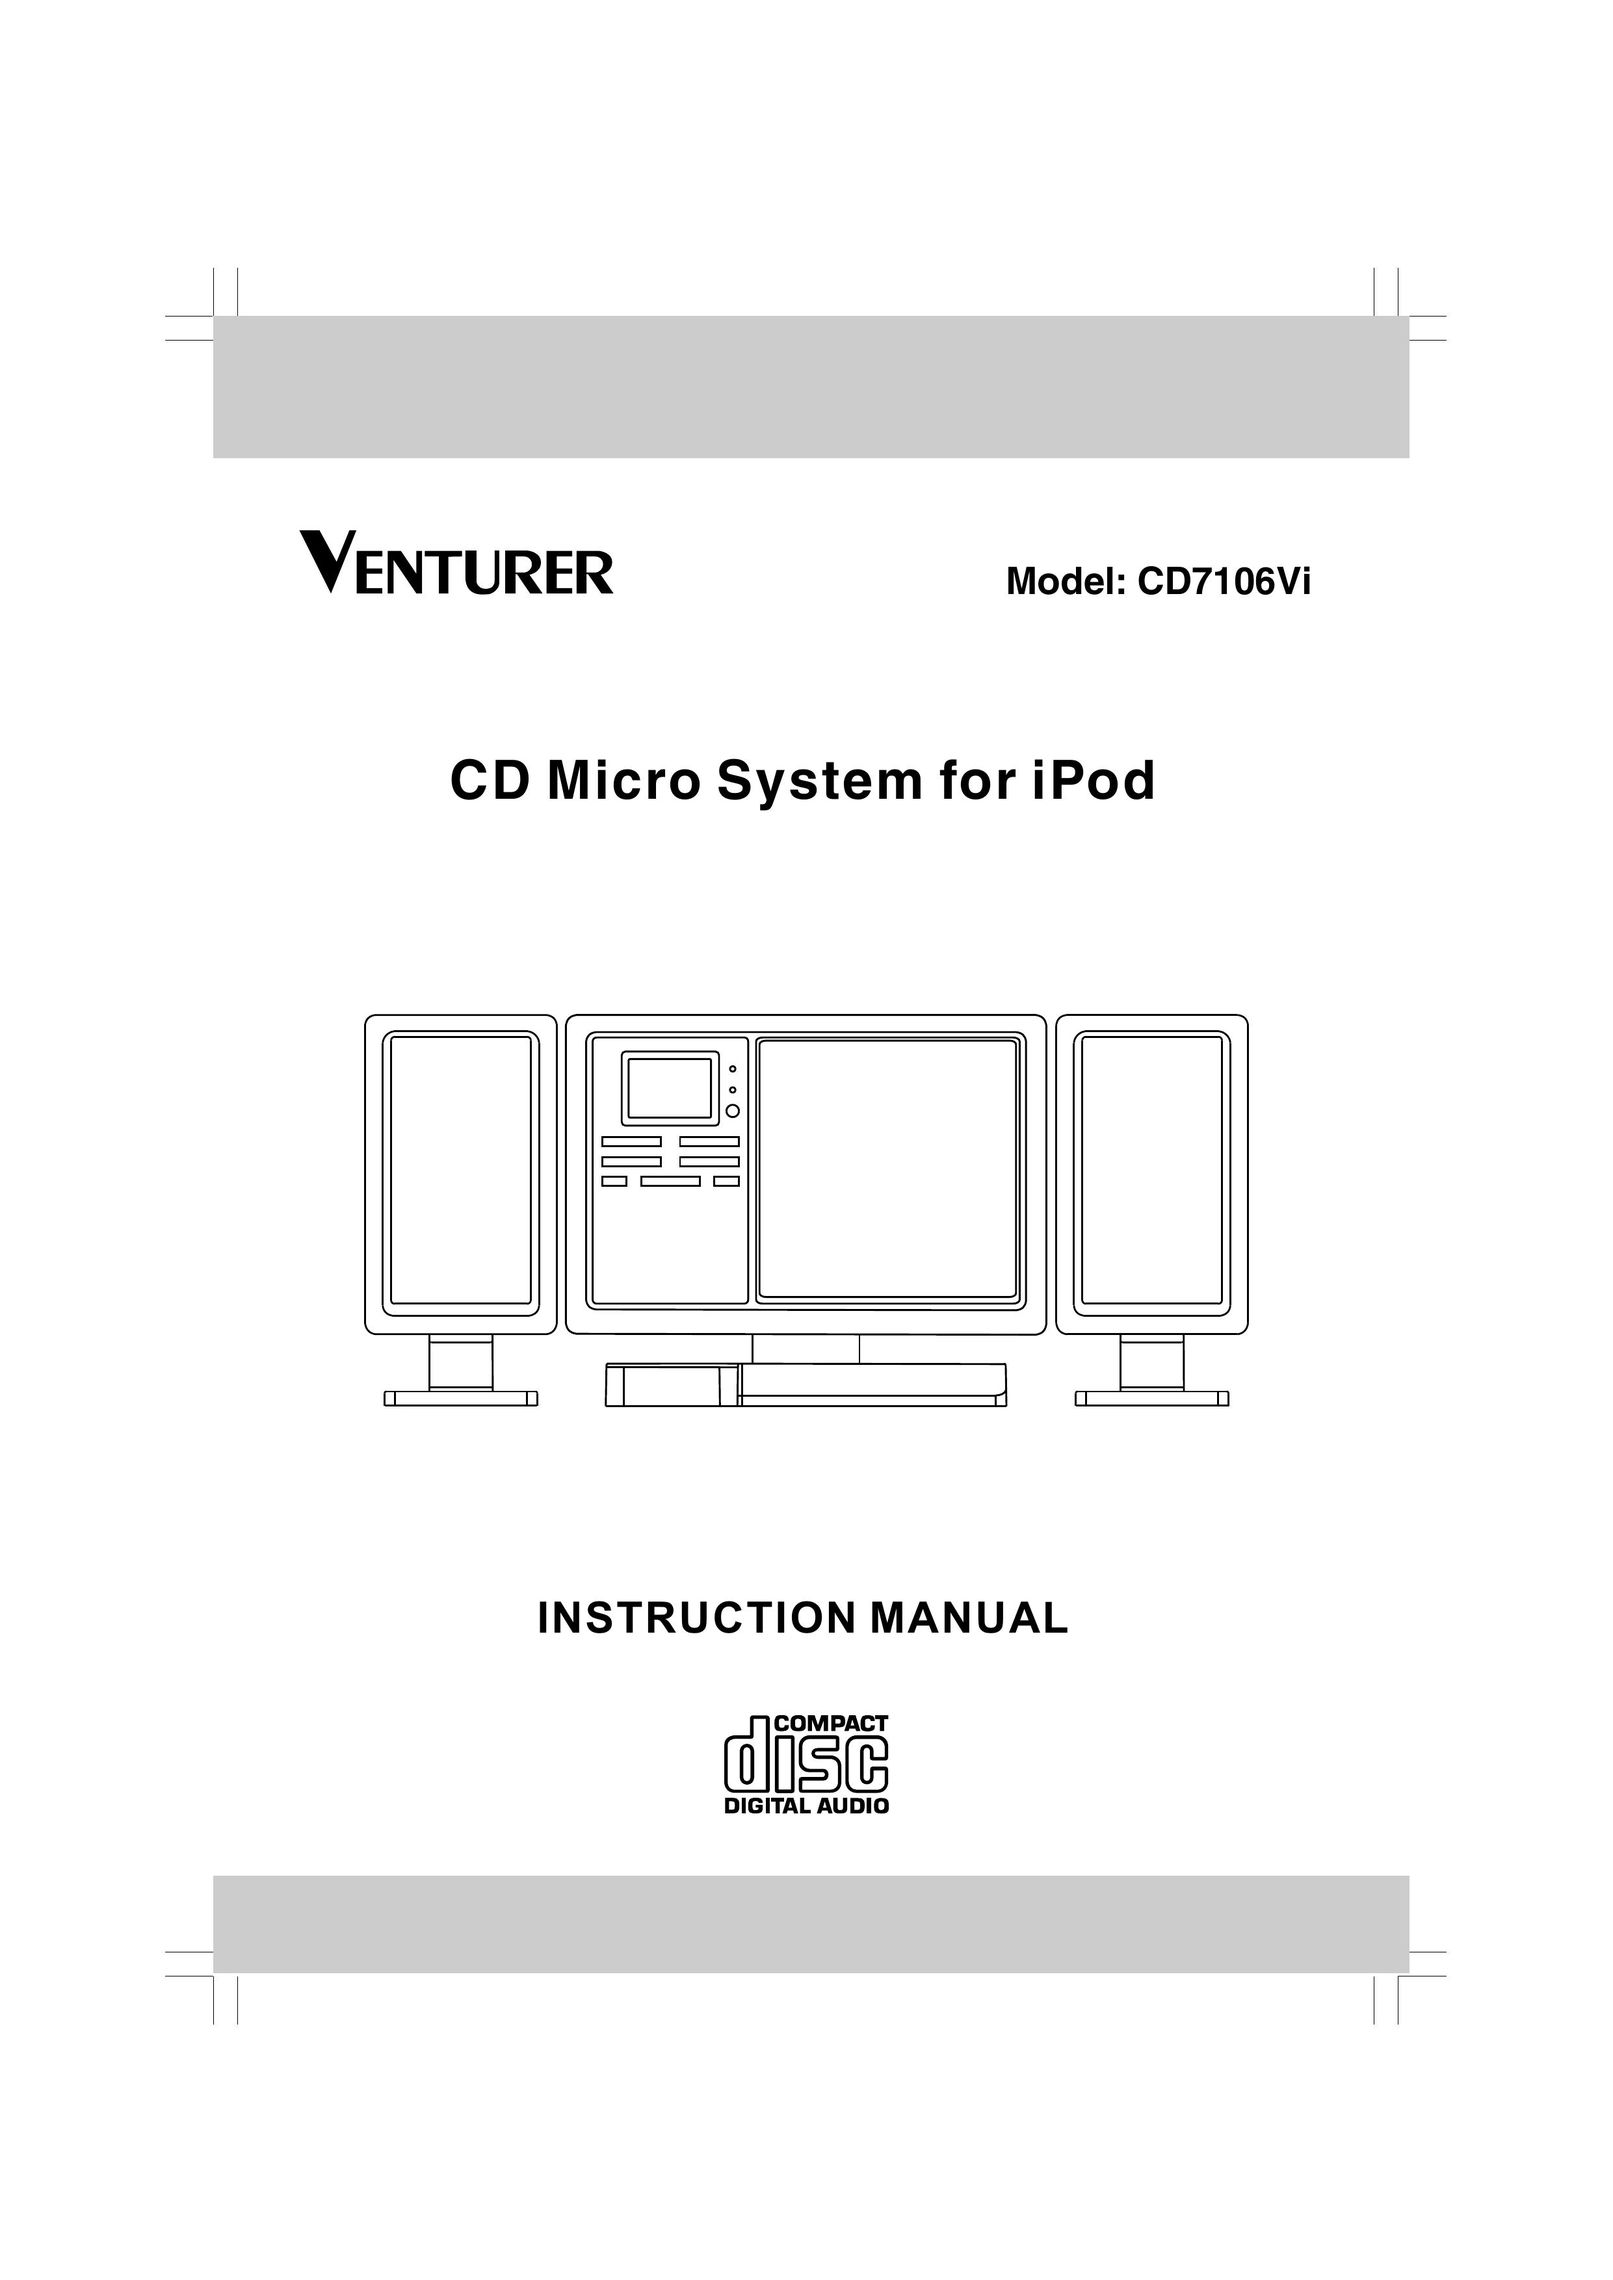 Venturer CD7106VI MP3 Docking Station User Manual